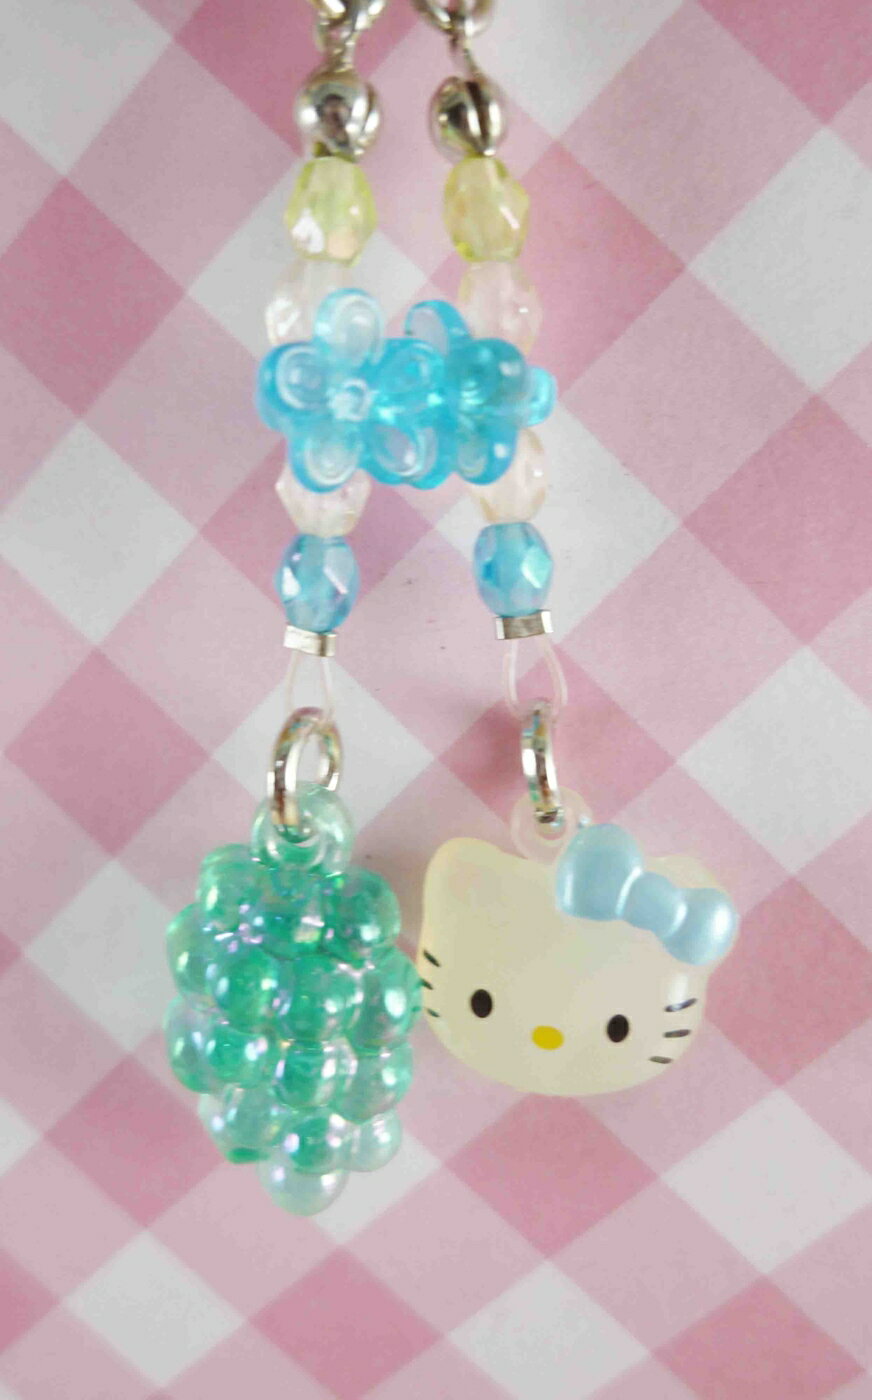 【震撼精品百貨】Hello Kitty 凱蒂貓 KITTY手機提帶-藍葡萄 震撼日式精品百貨